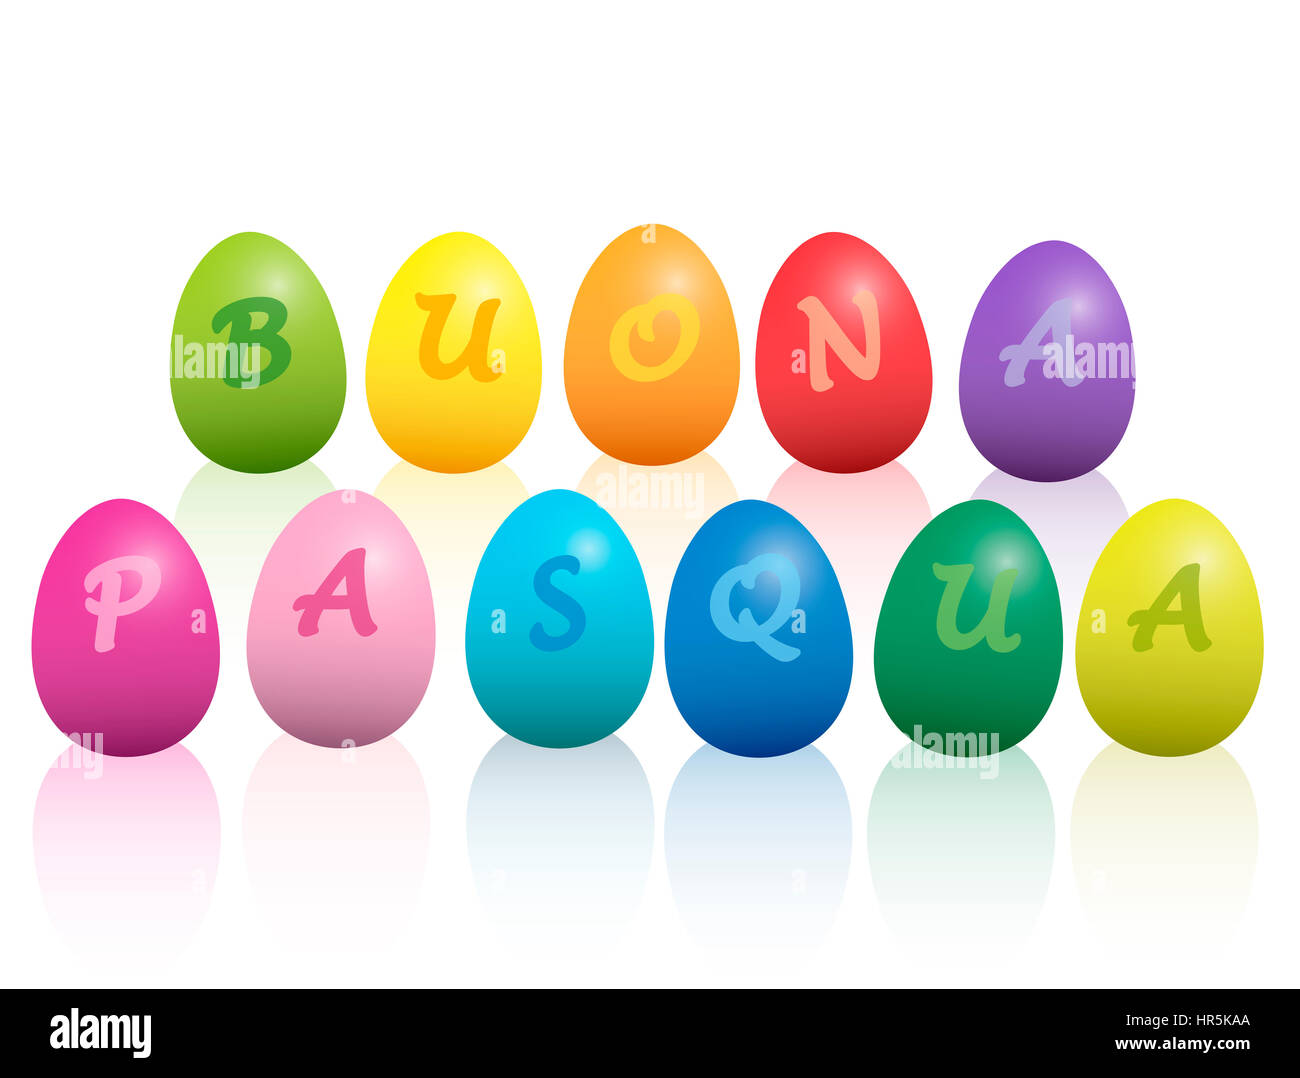 BUONA PASQUA - Buona Pasqua in lingua italiana - scritto con colorate uova di pasqua. Immagine su sfondo bianco. Foto Stock